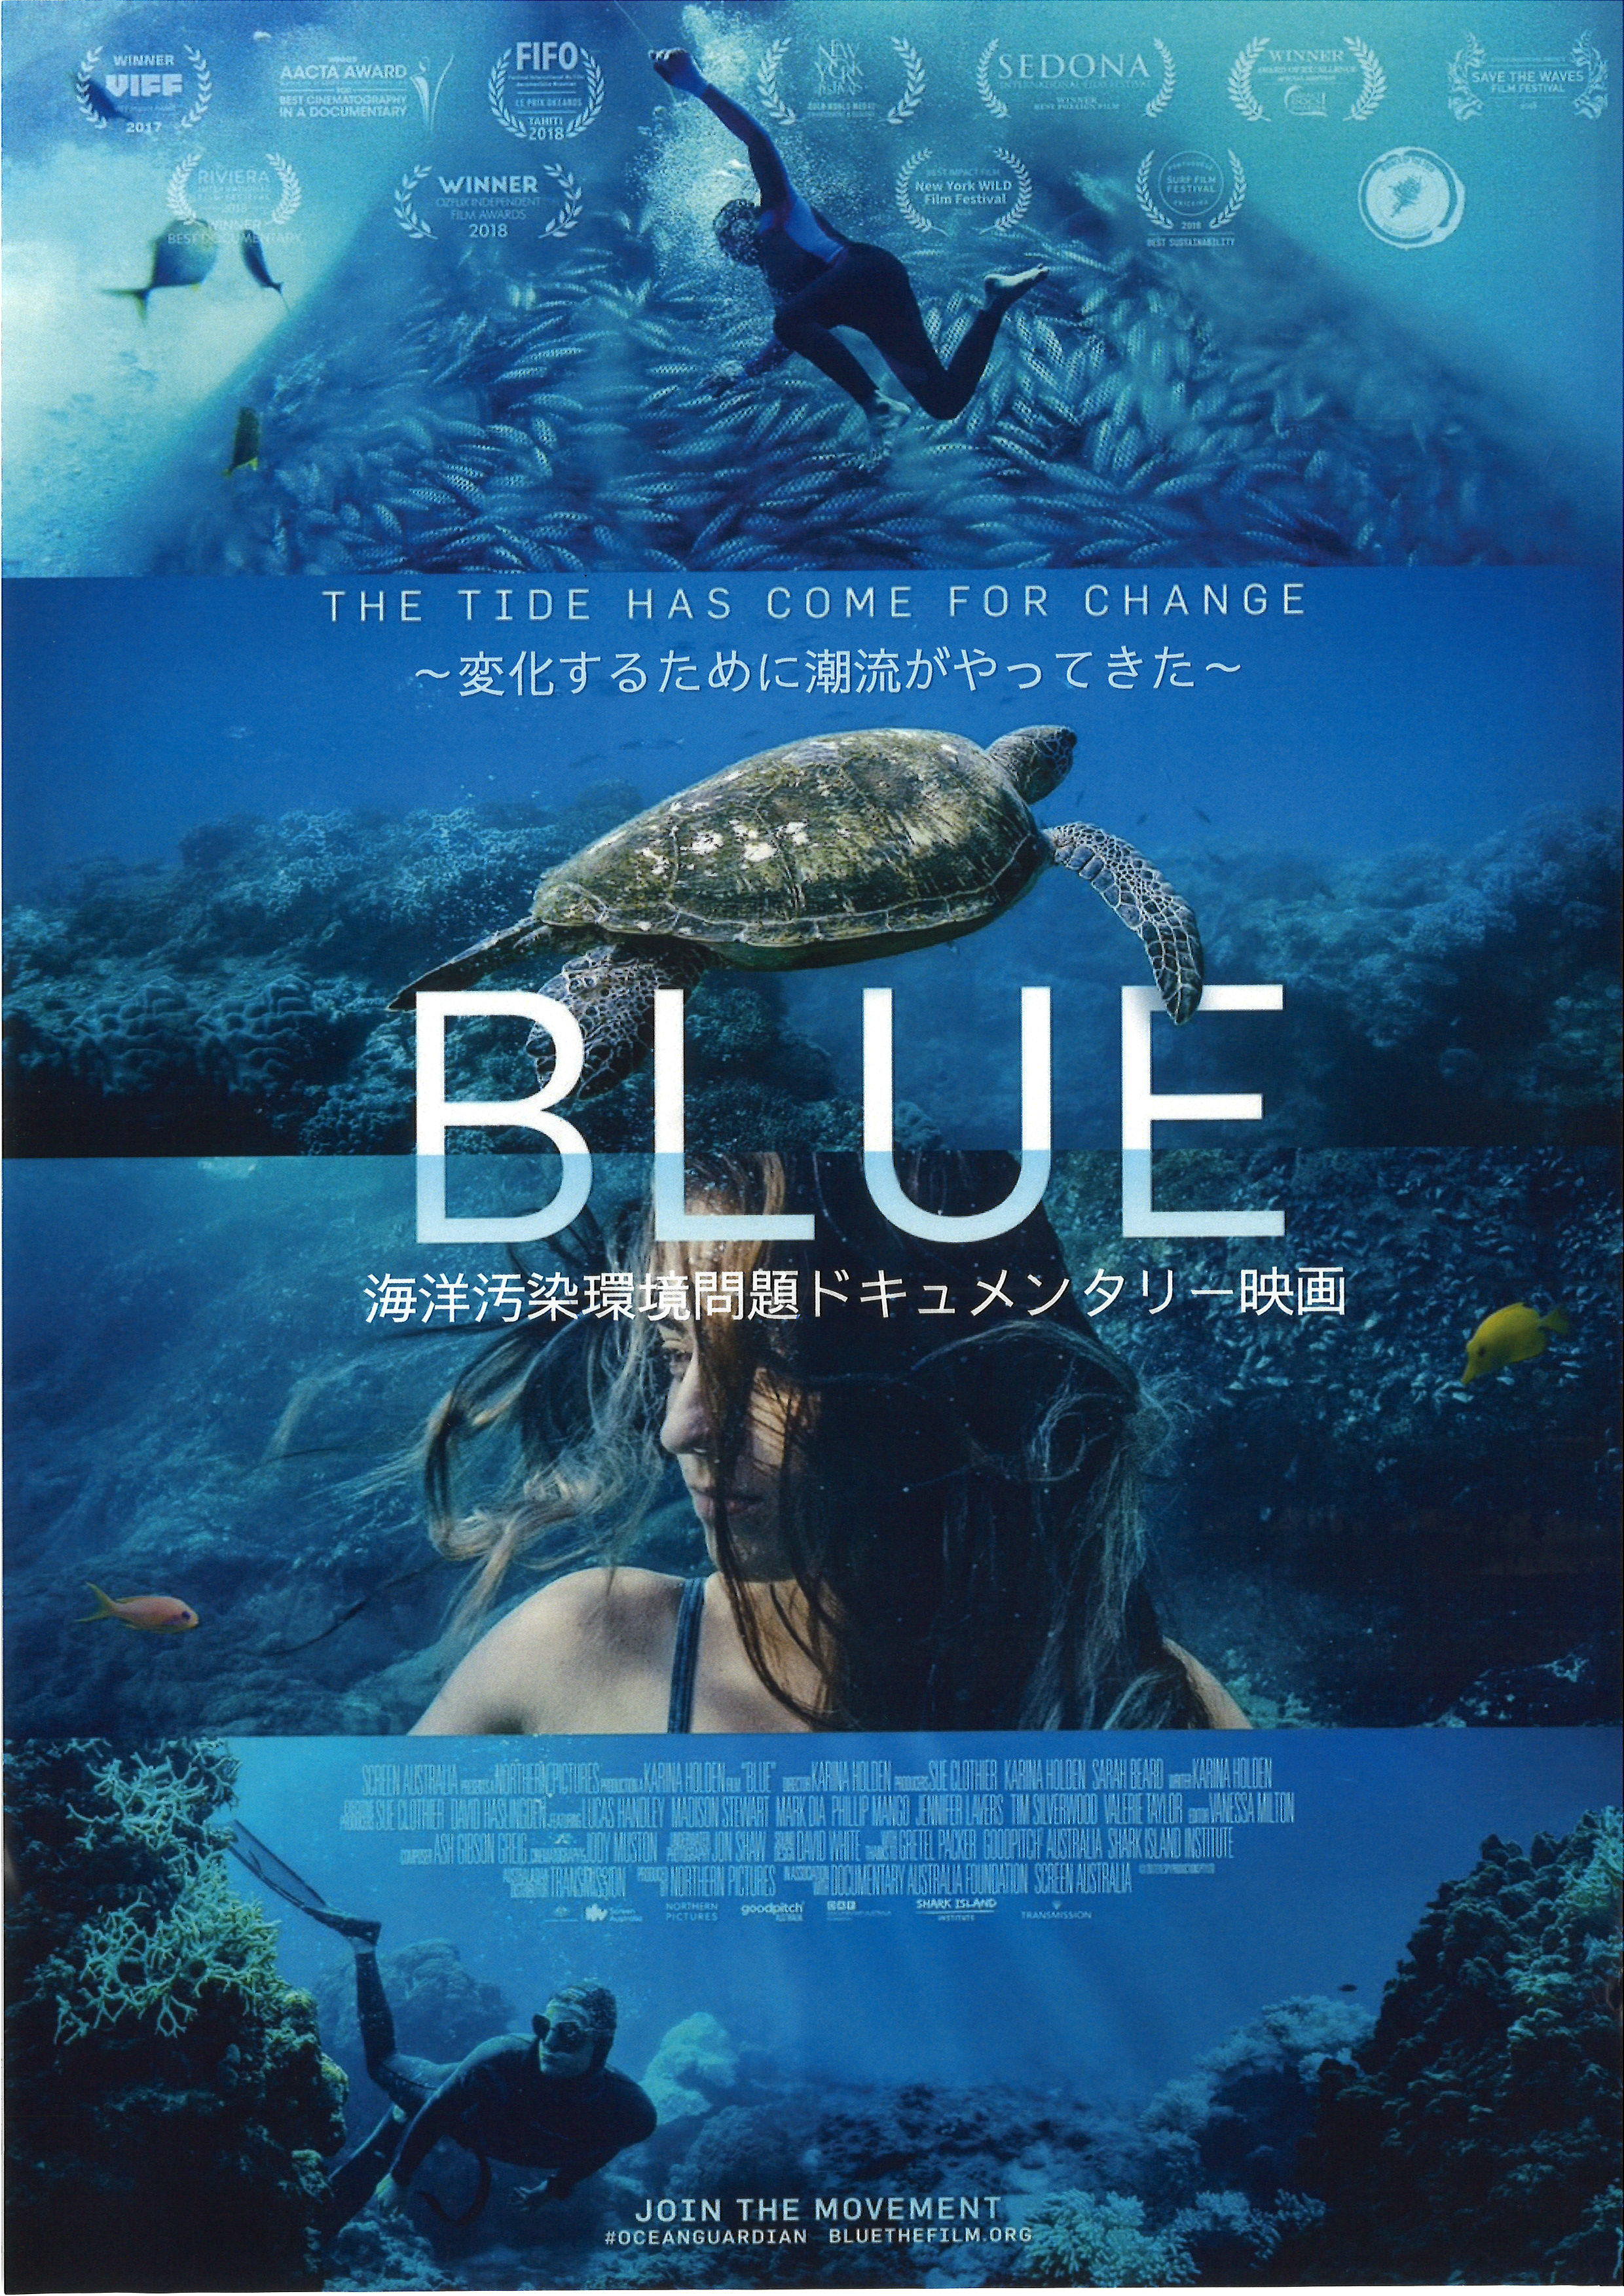 海洋汚染ドキュメンタリー映画「BLUE」上映会